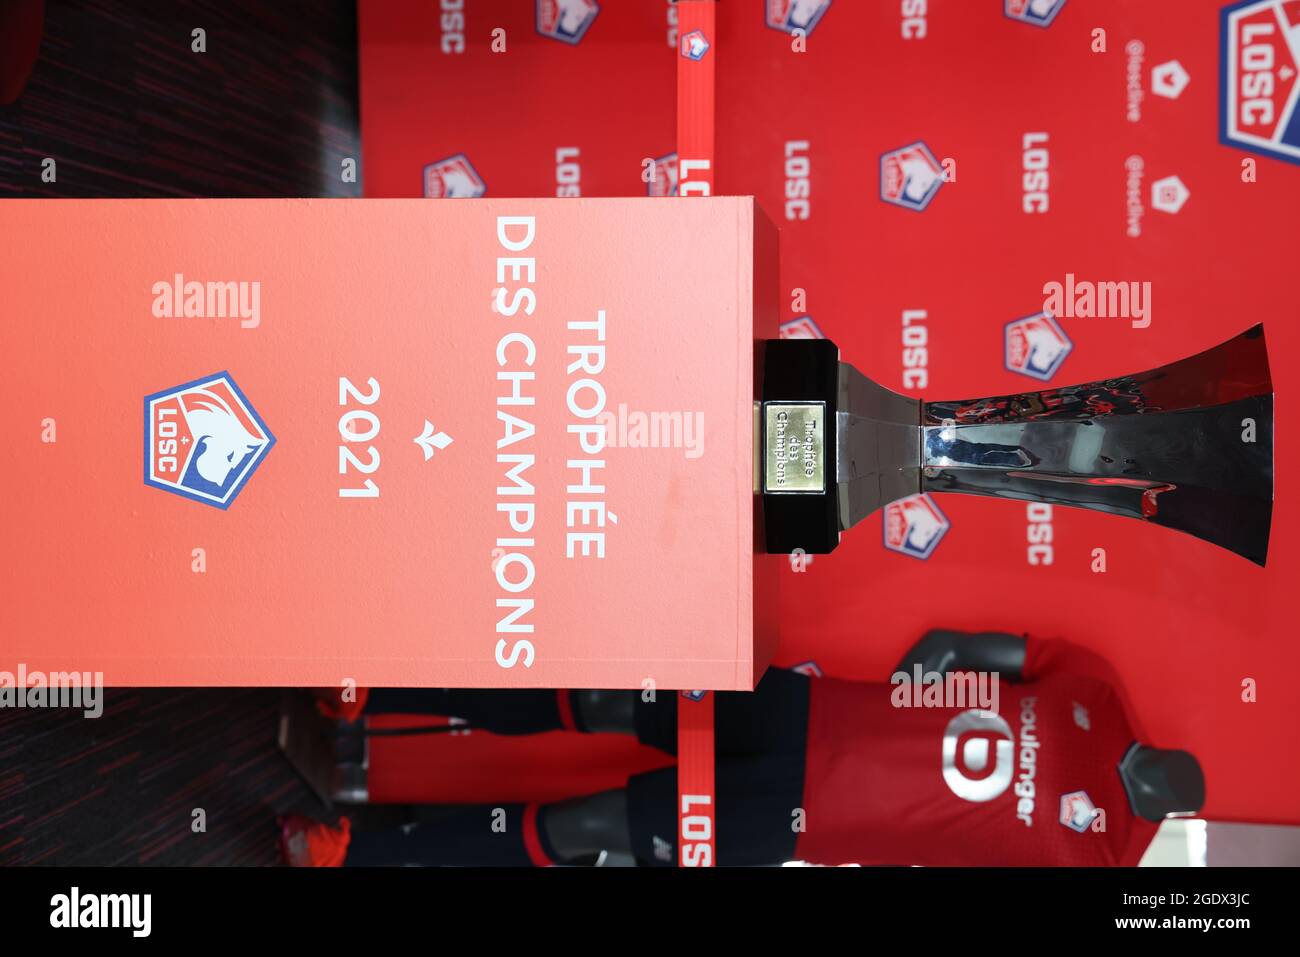 Quand PepsiCo expose le trophée de l'UEFA Champions League au Carrefour de  Chambourcy [photos]